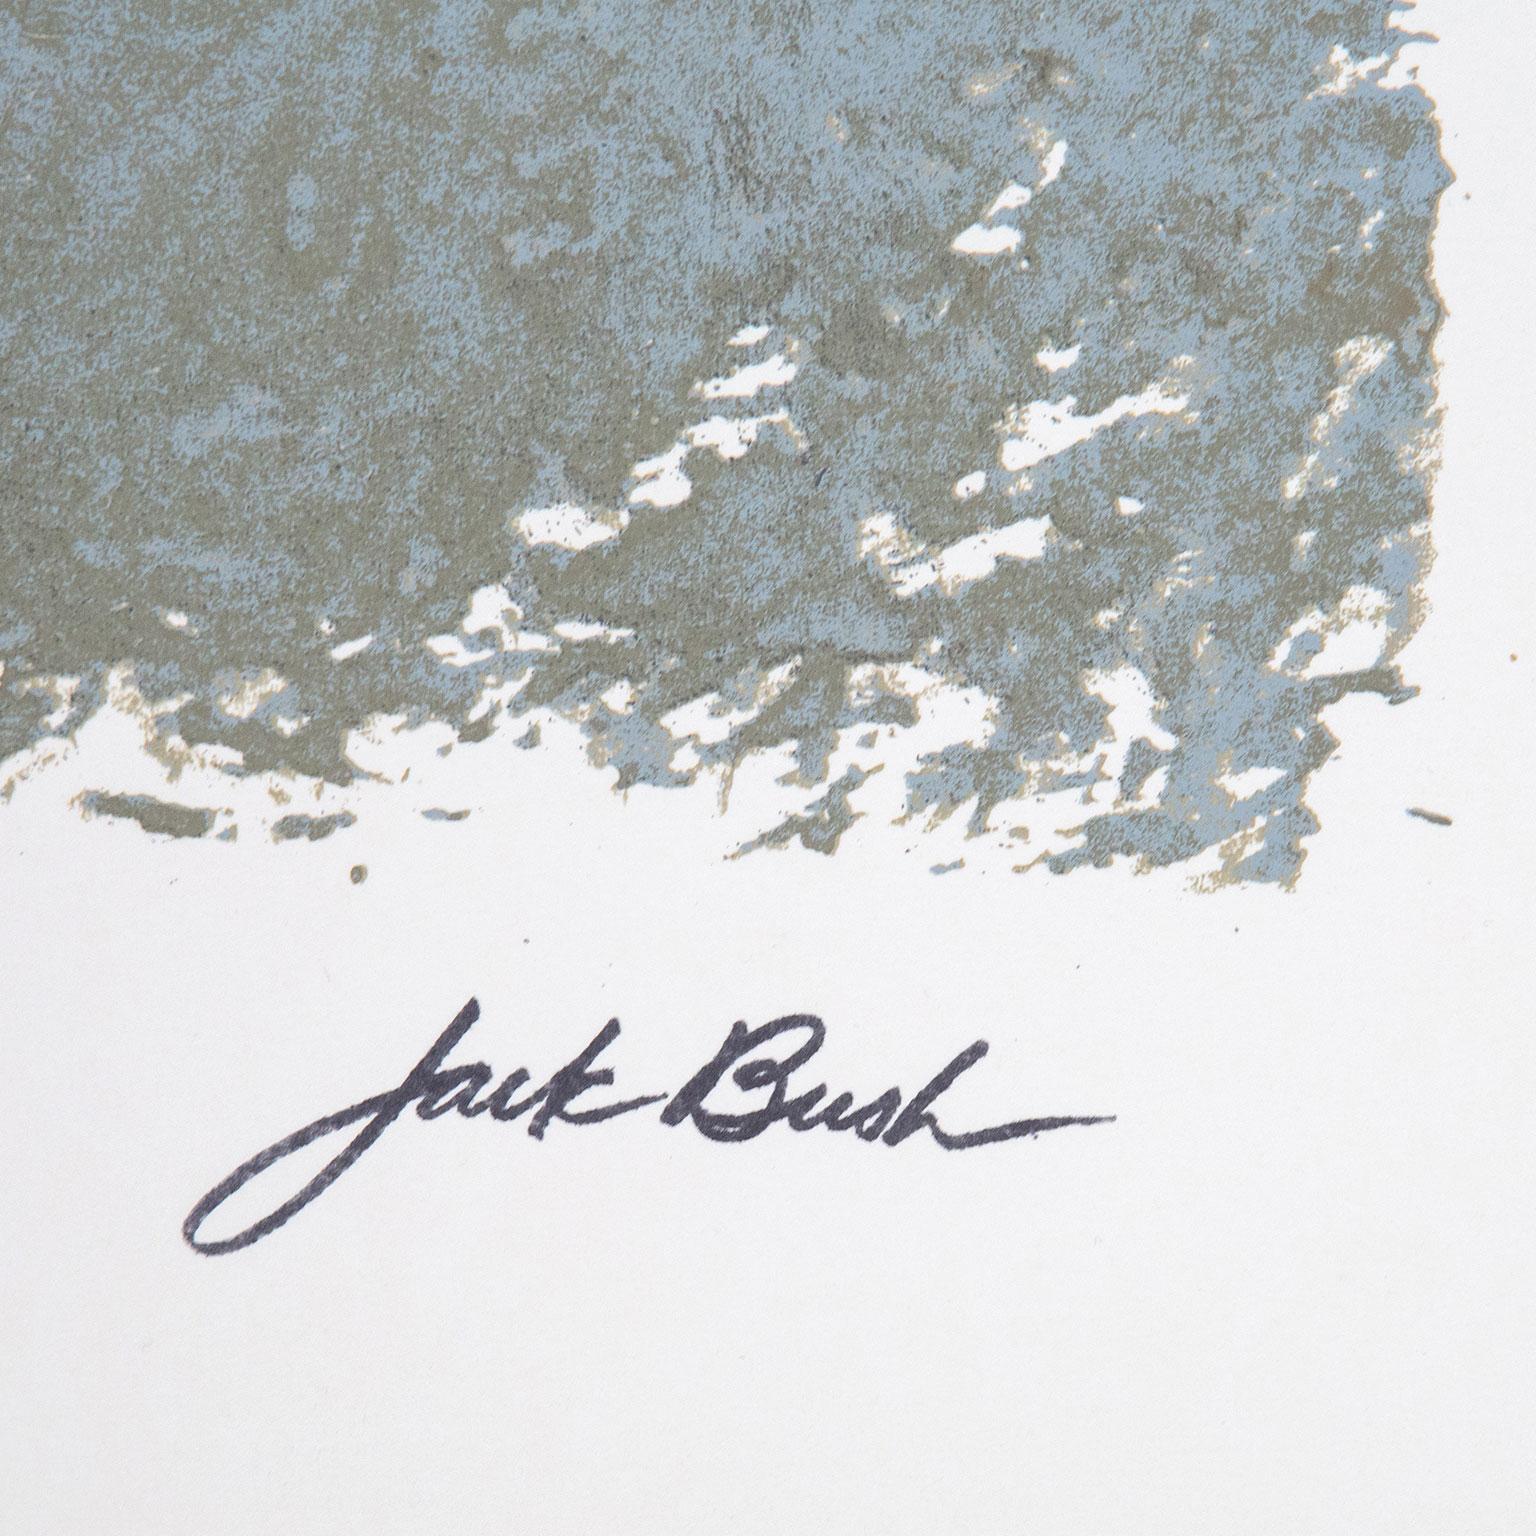 Three and Blue Loop - Print by Jack Bush